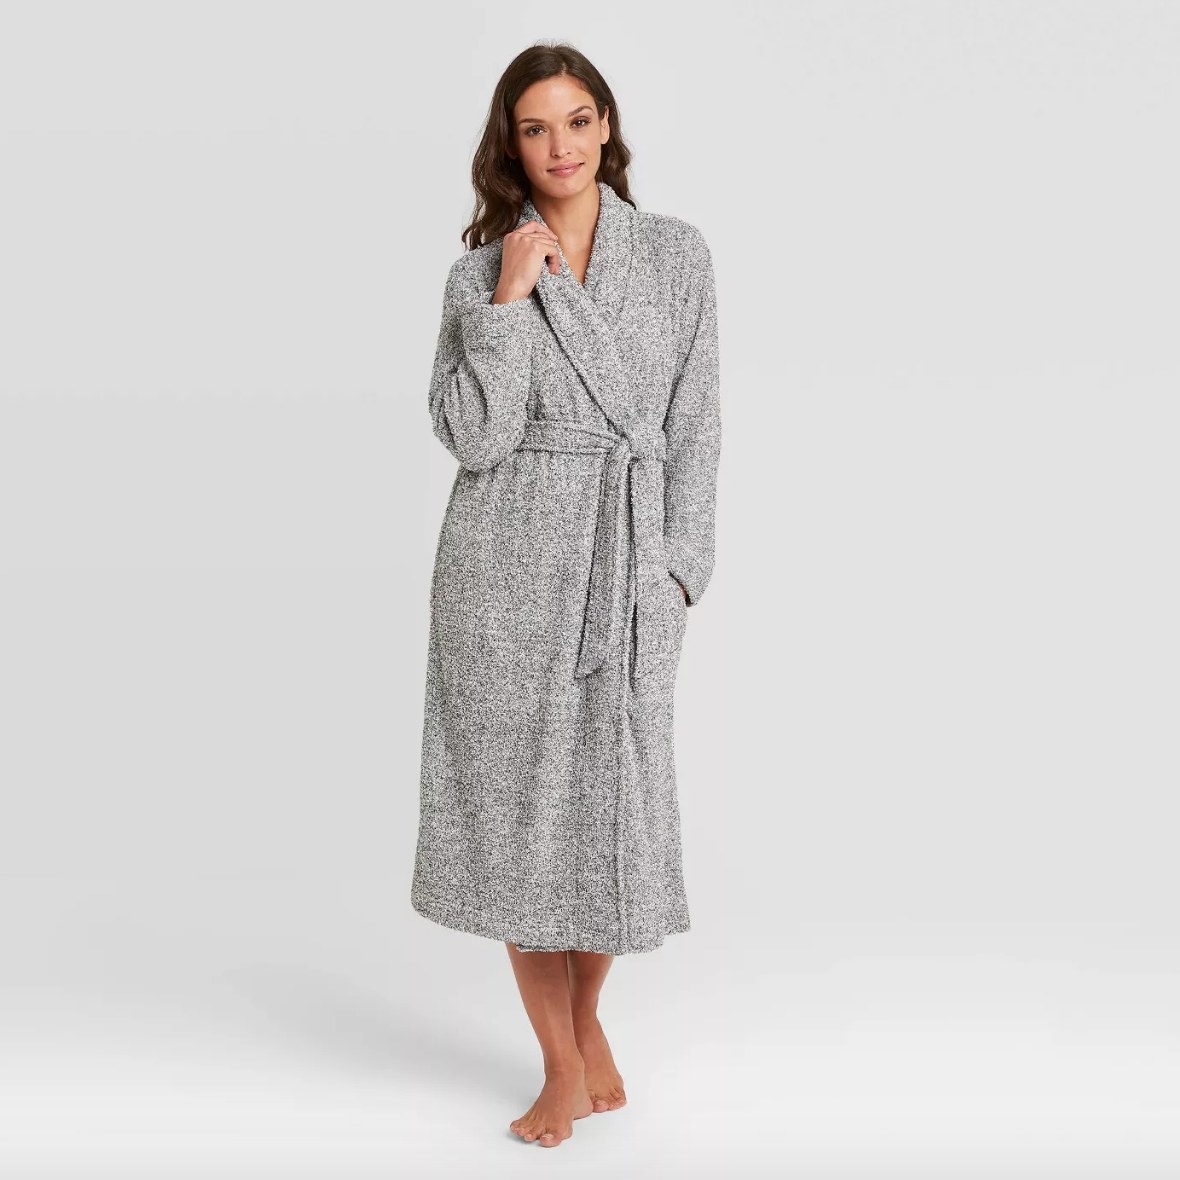 Model wearing long gray robe